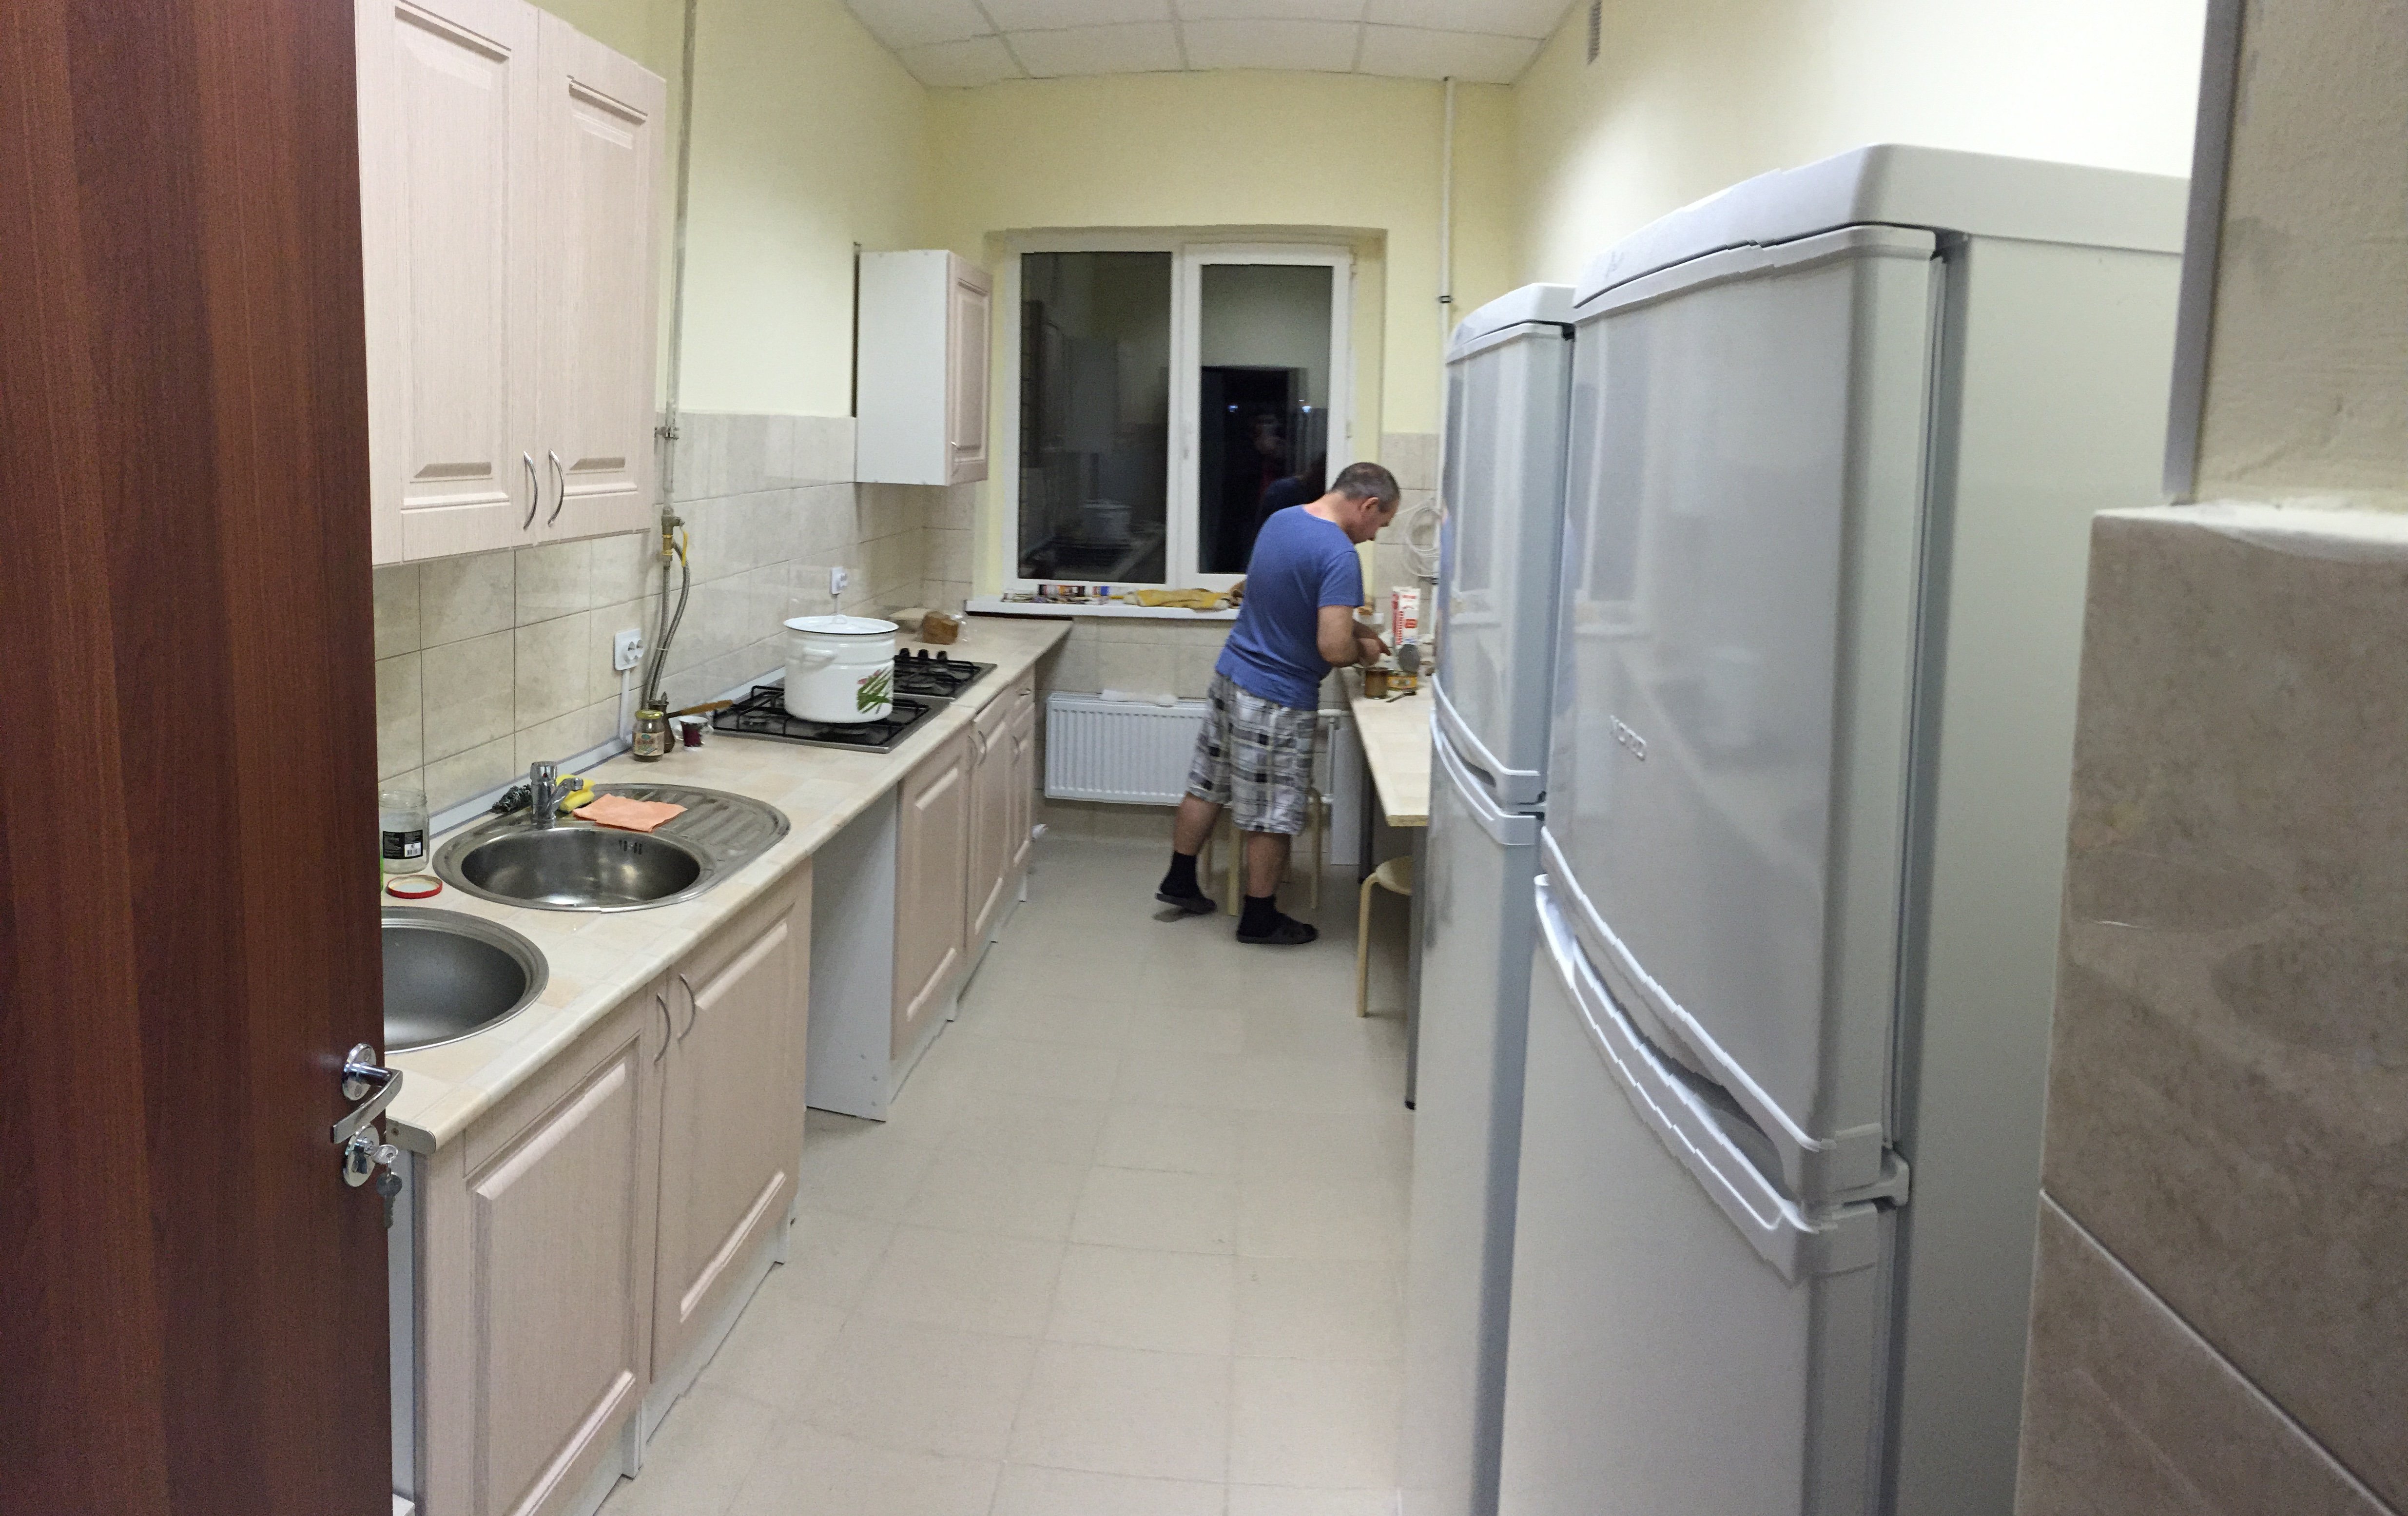 Ванная в общежитии. Кухня в общежитии. Общая кухня в общежитии. Санузел в комнате общежития.